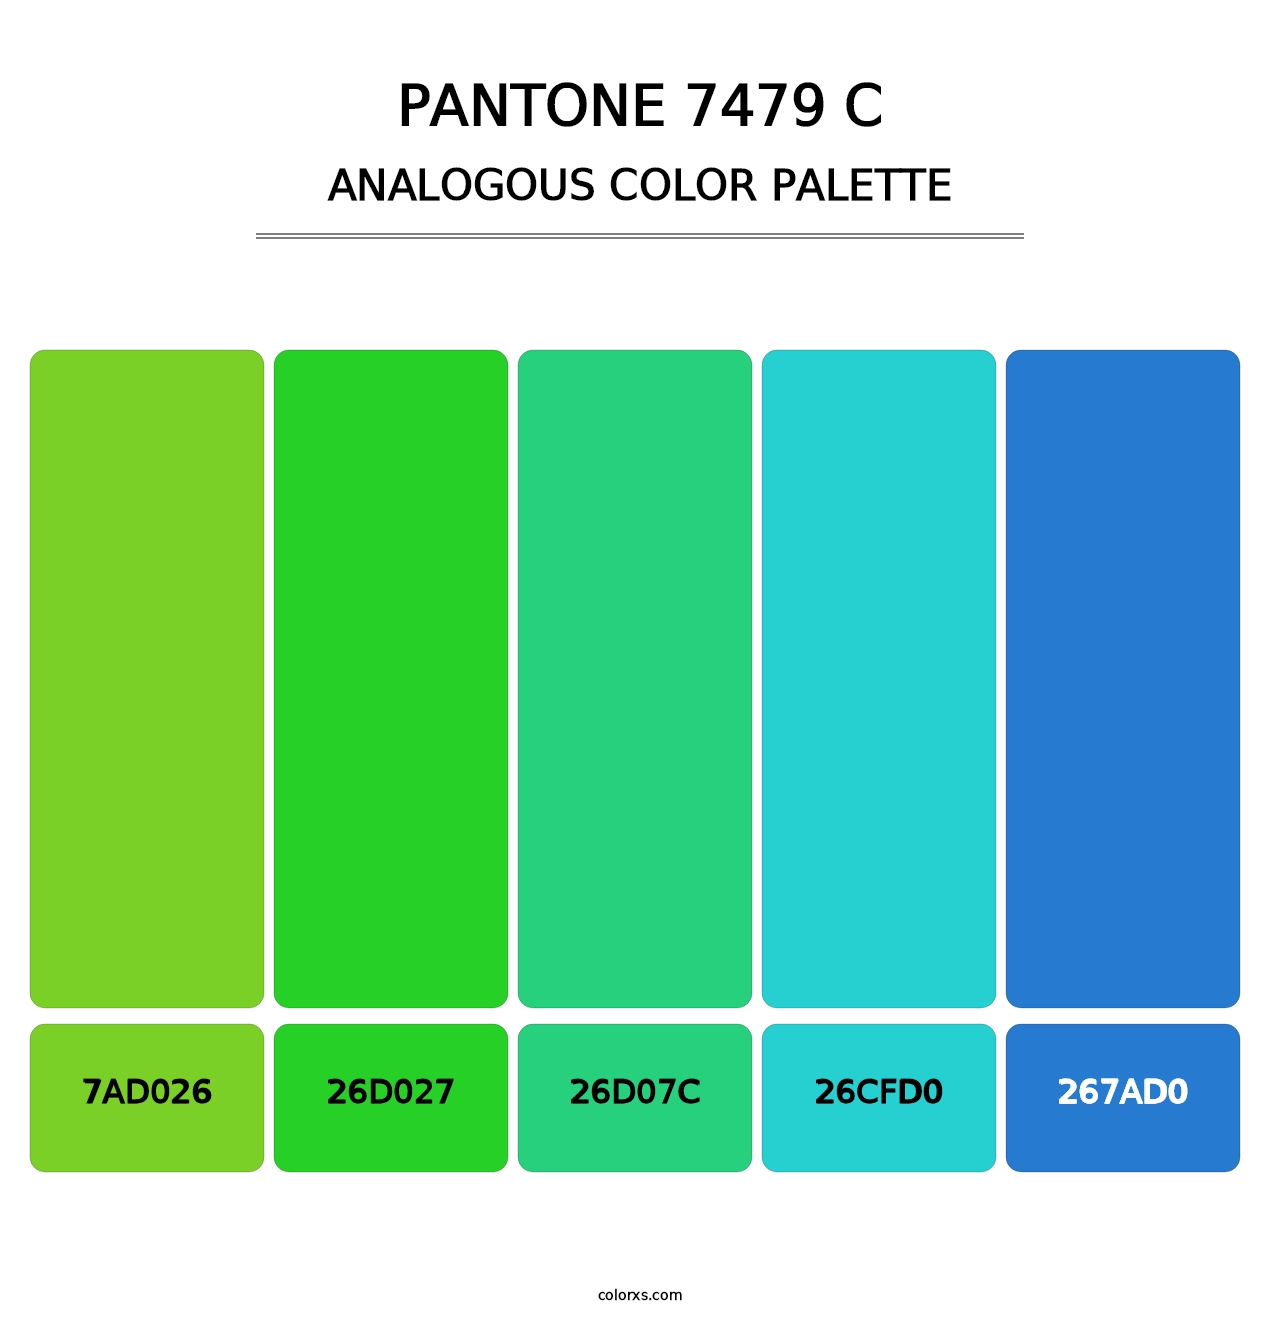 PANTONE 7479 C - Analogous Color Palette